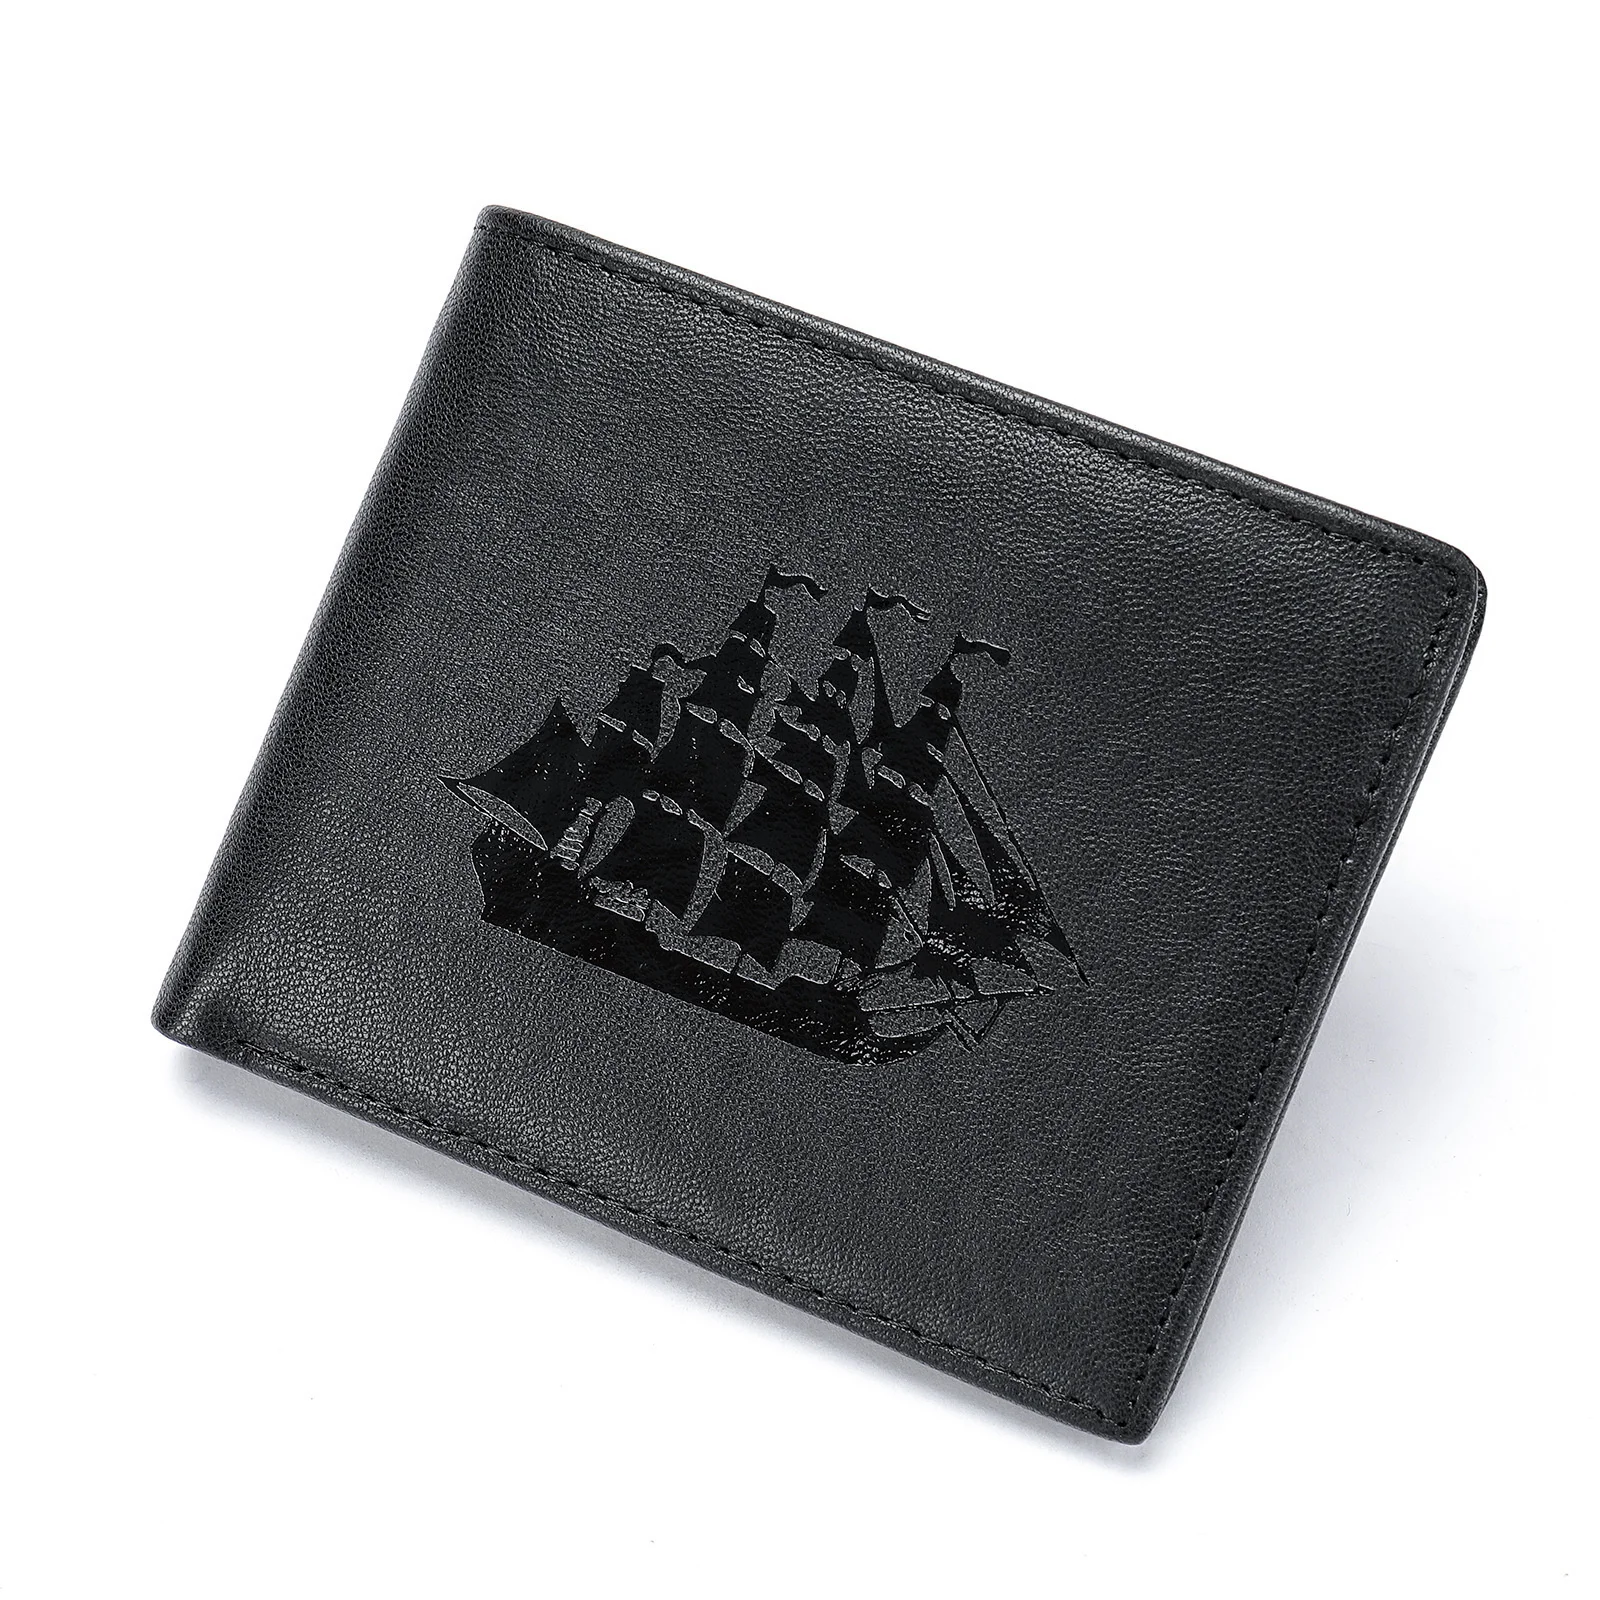 

Двойные Короткие Кошельки Desig, Мужской винтажный кошелек на застежке, кошелек для монет, карман для карт, кошелек из натуральной кожи с рисунком лодки, кошелек с RFID